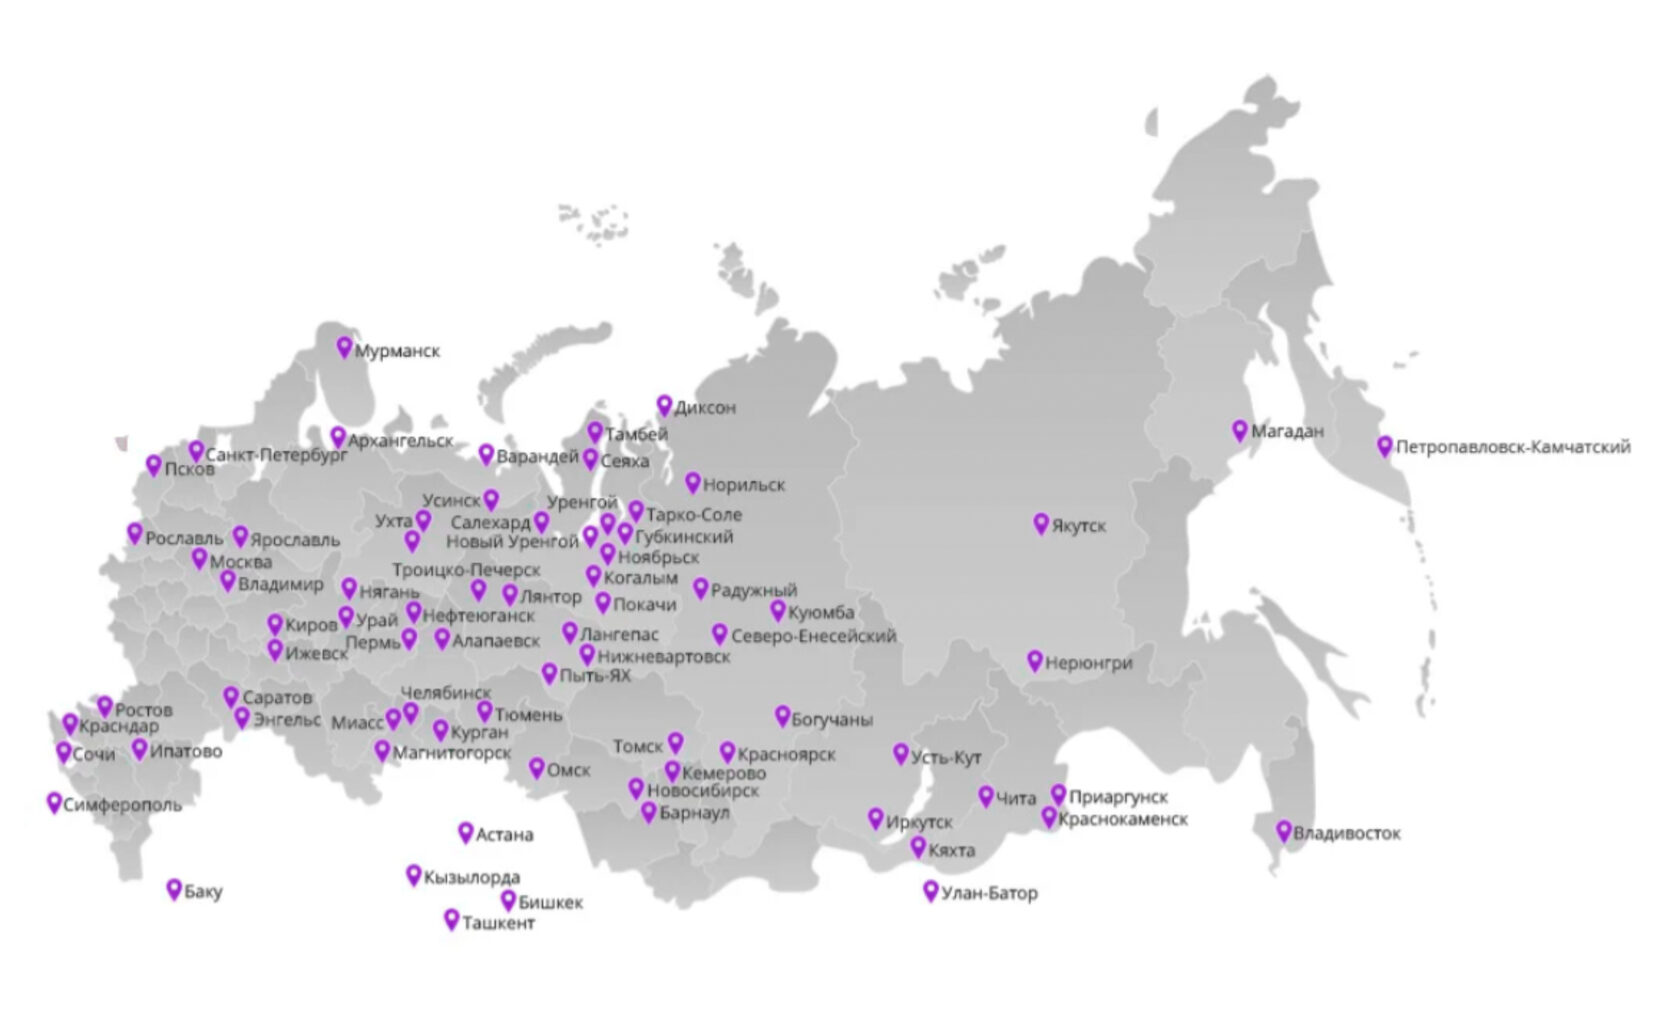 Сеть магазинов магнит на карте России